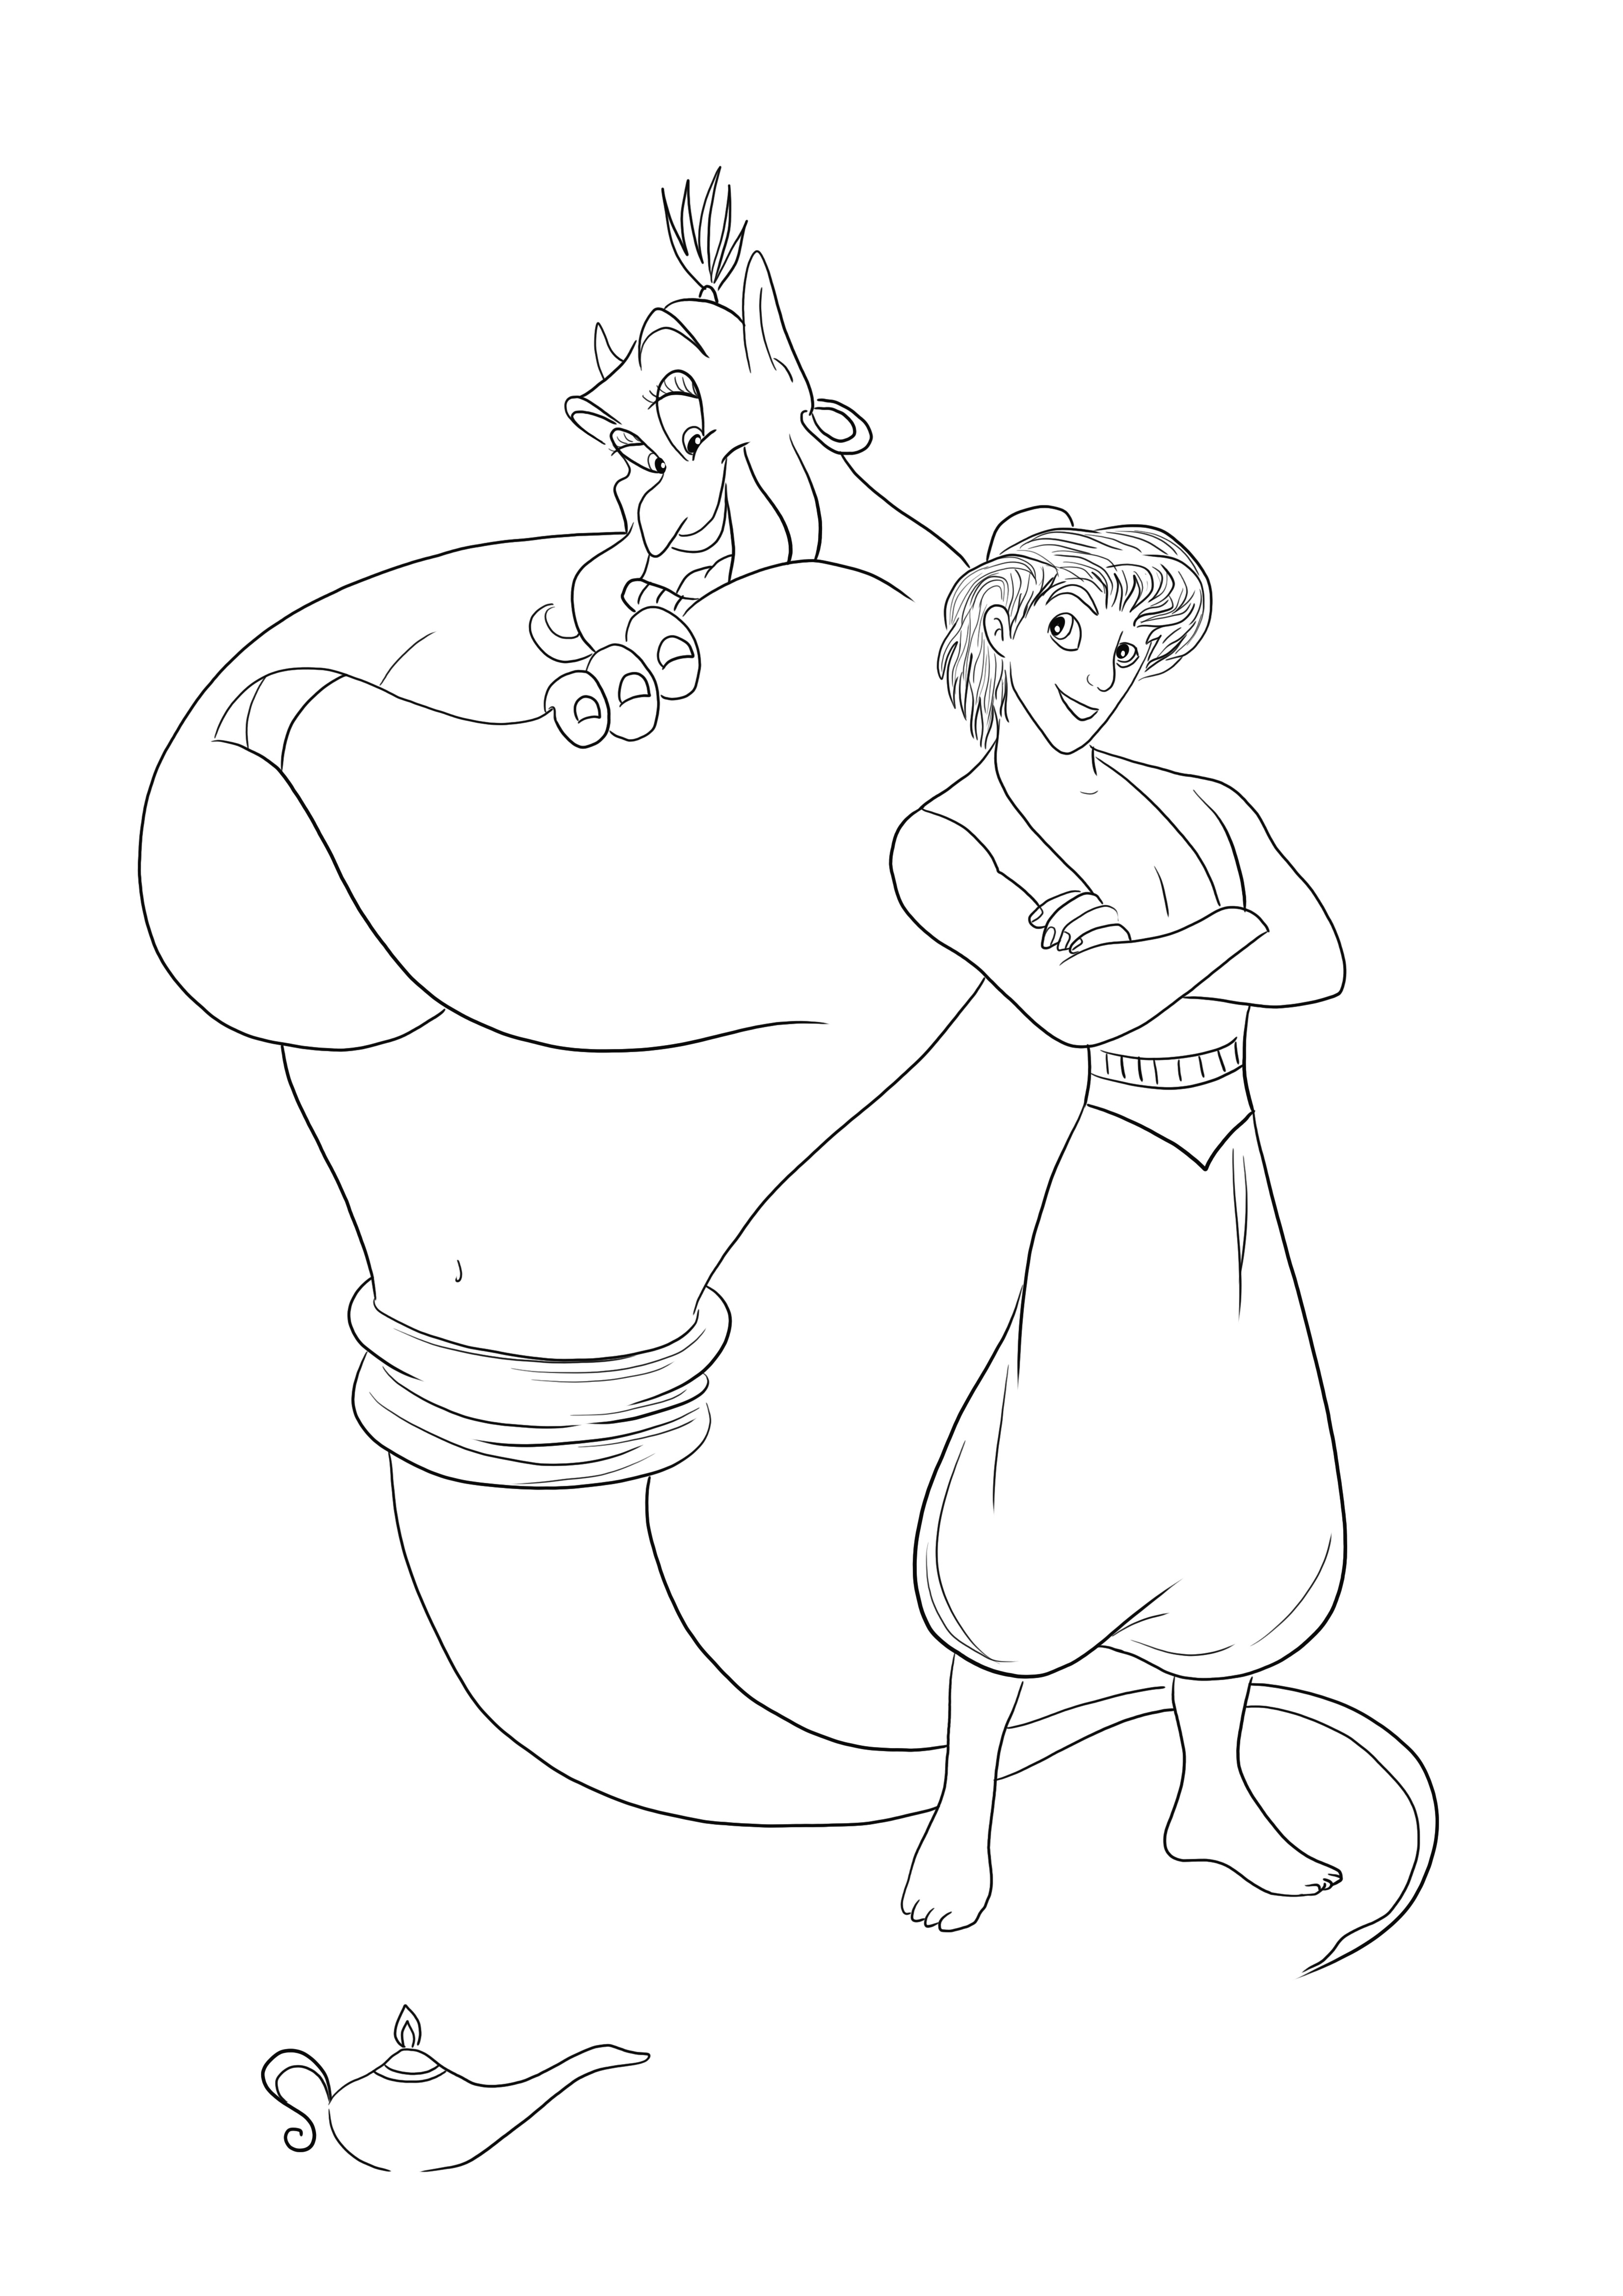 Genie en Aladdin kunnen gratis worden afgedrukt om te kleuren en tegelijkertijd plezier te hebben kleurplaat